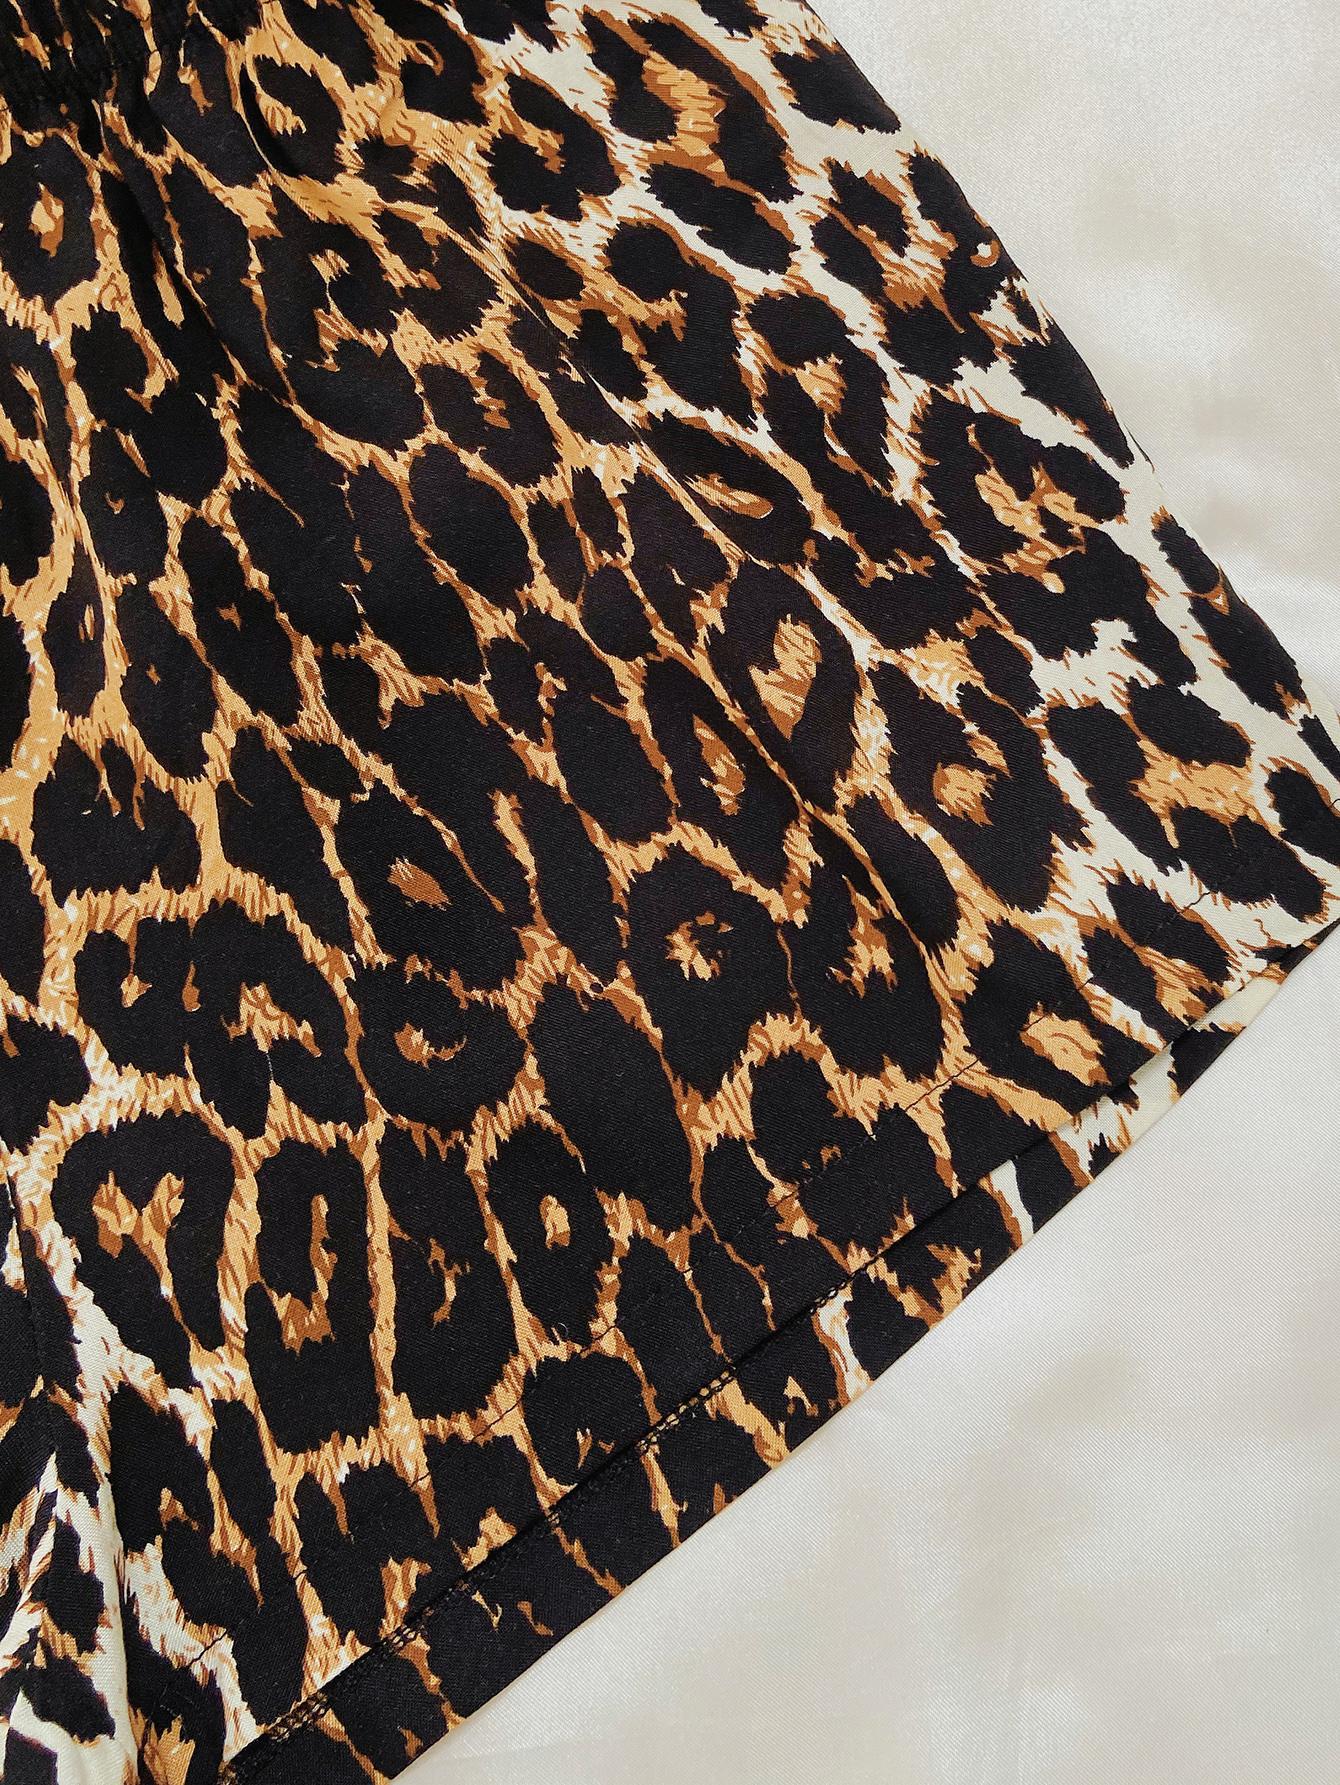 Leopard Lip Graphic Top and Shorts Lounge Set DromedarShop.com Online Boutique